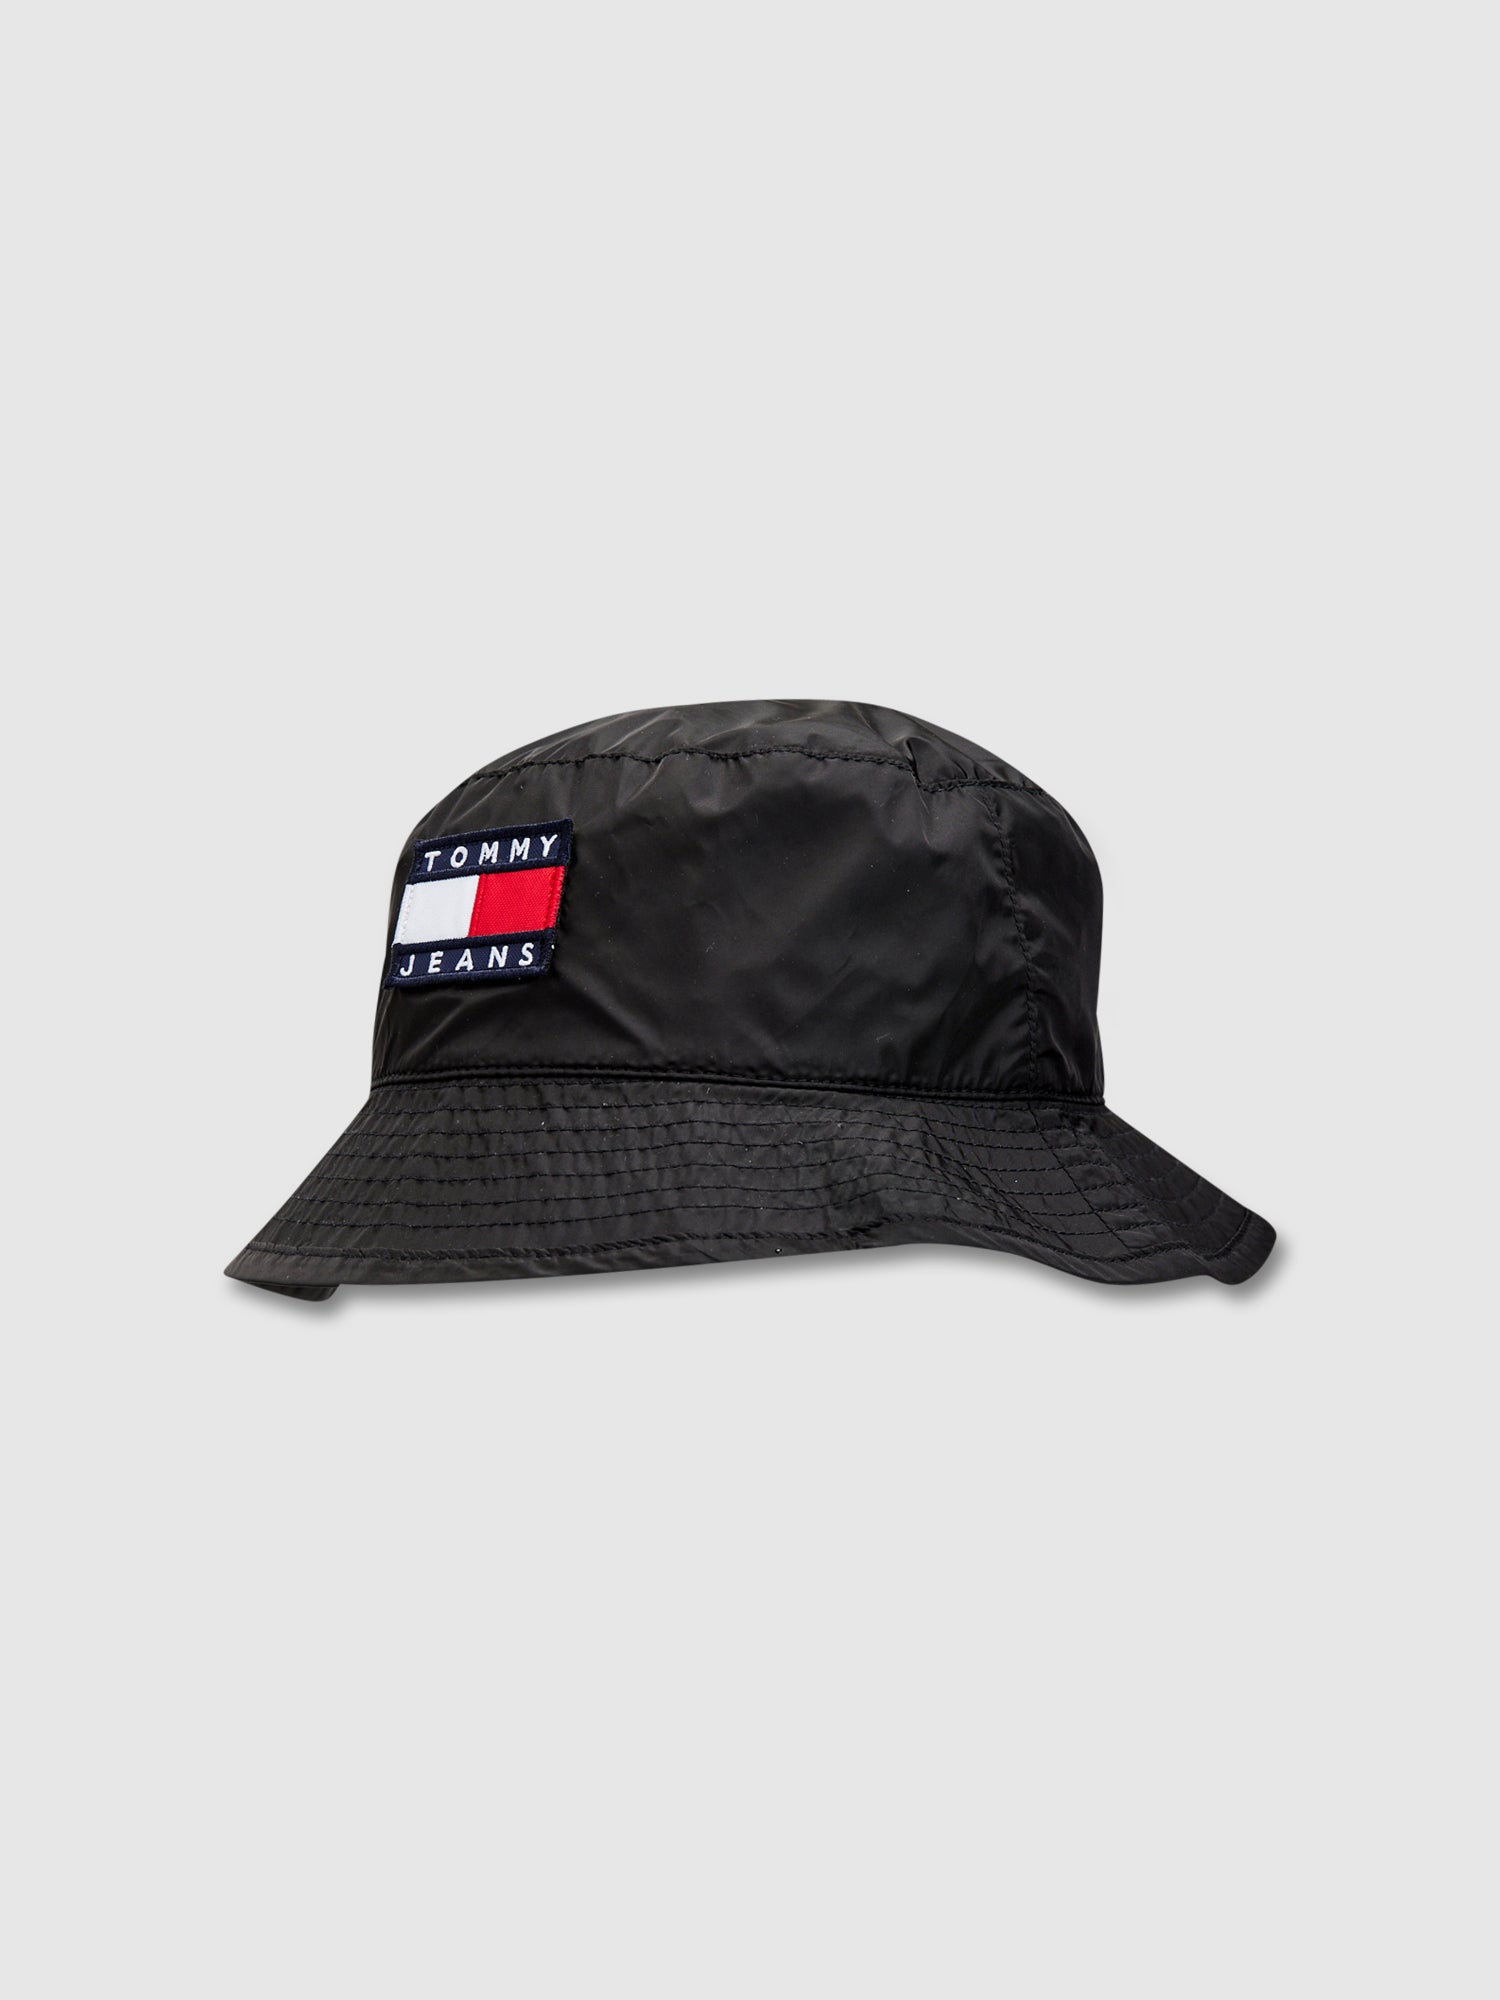 כובע באקט ניילון עם תווית לוגו / יוניסקס- Tommy Hilfiger|טומי הילפיגר